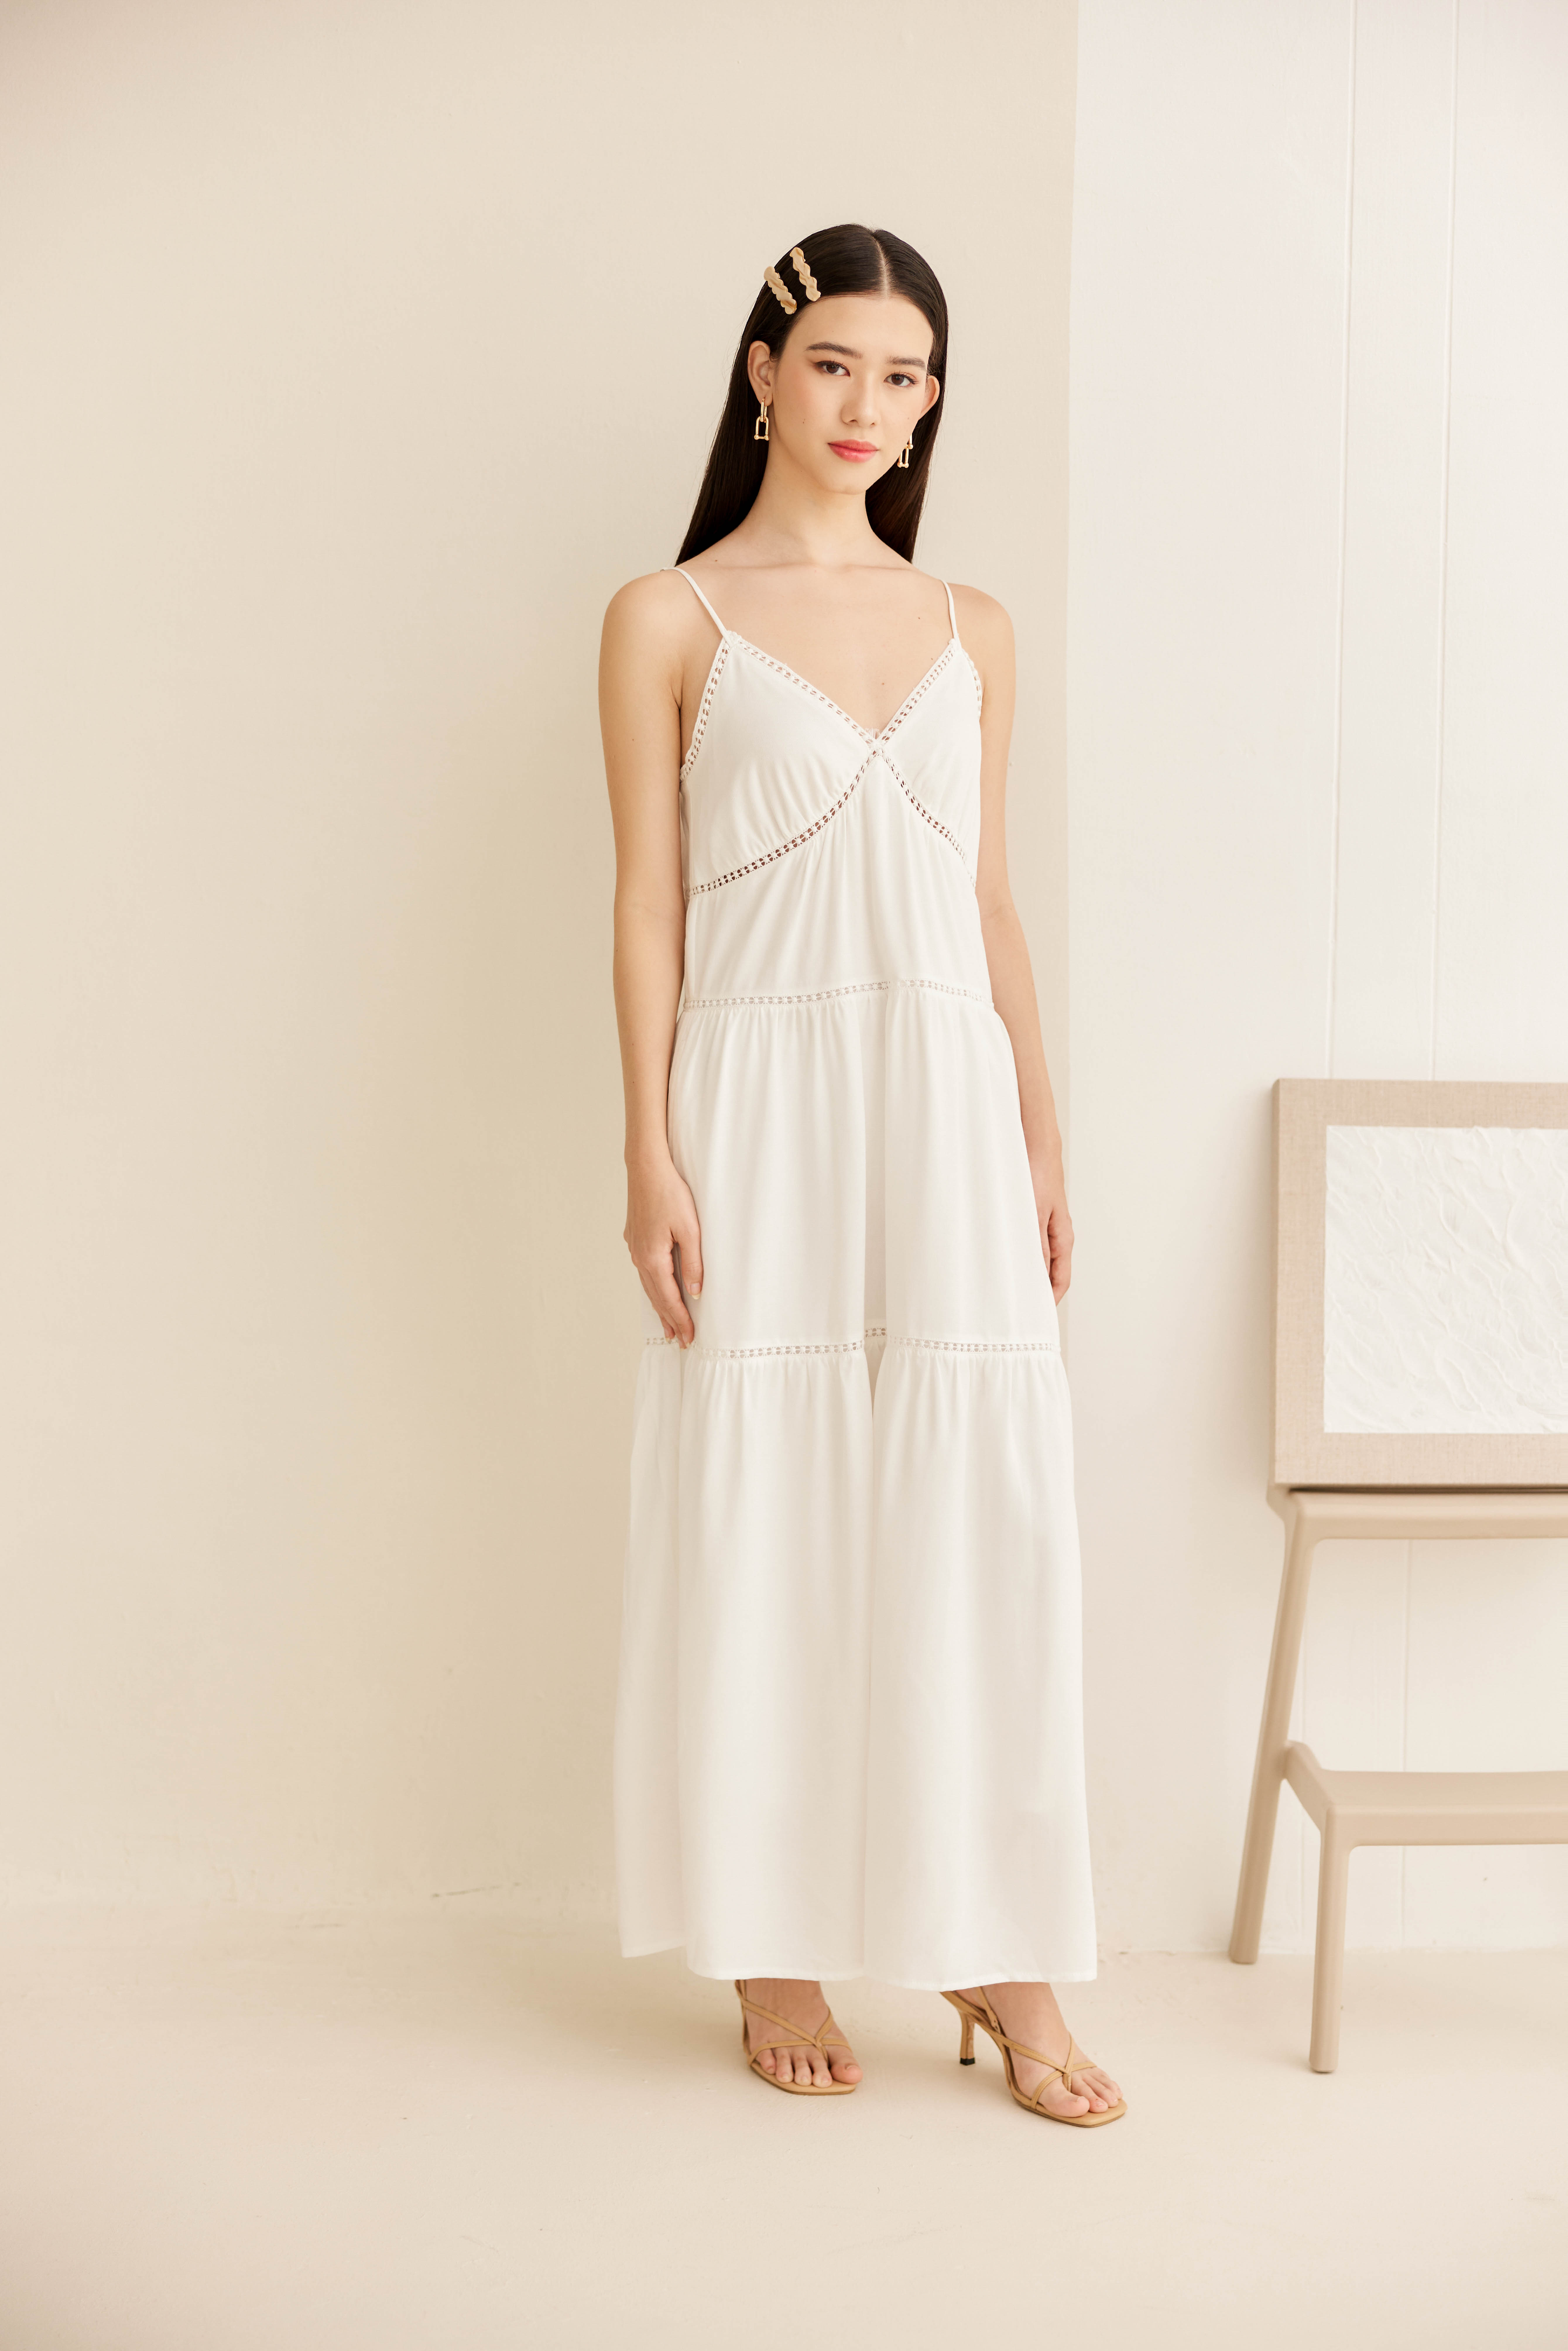  woman wearing a cozy white dress